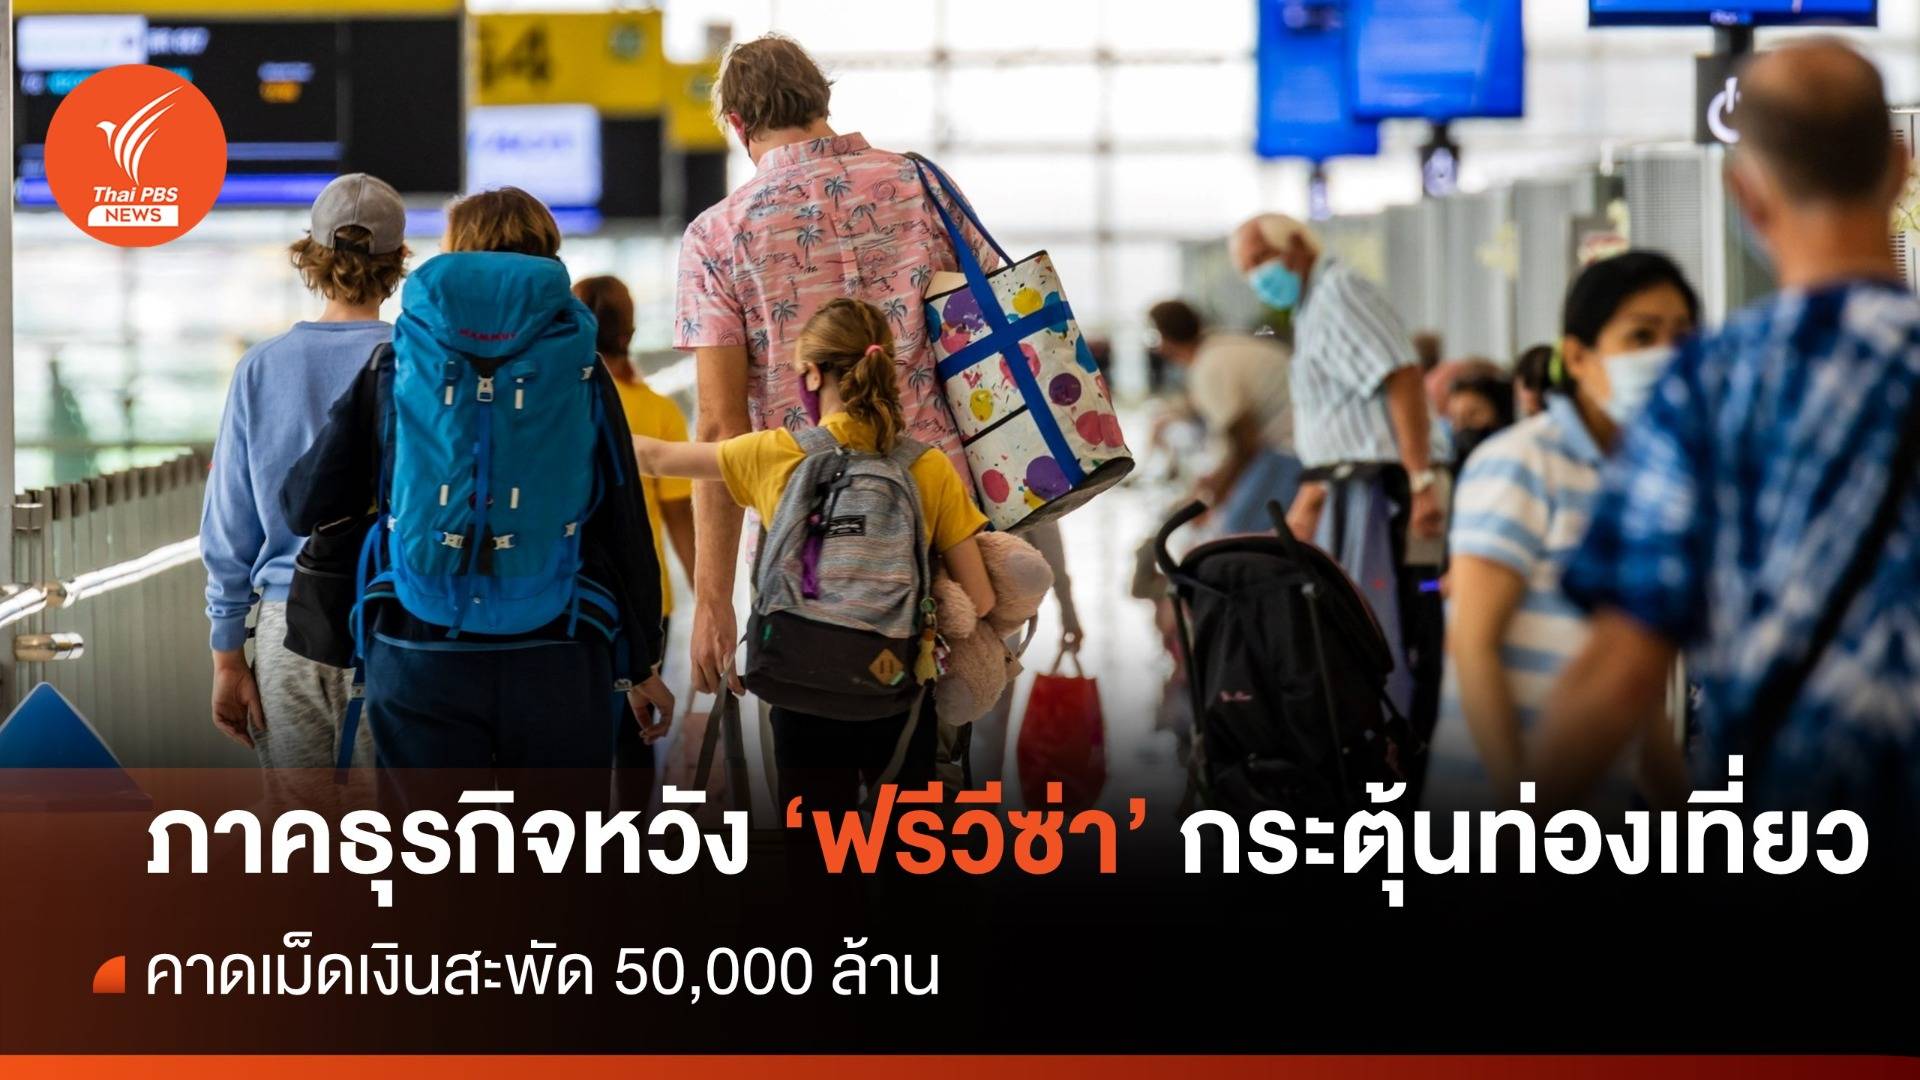 ภาคธุรกิจหวัง "ฟรีวีซ่า" ช่วยท่องเที่ยวไทย คาดเงินสะพัดกว่า 50,000 ล้าน 